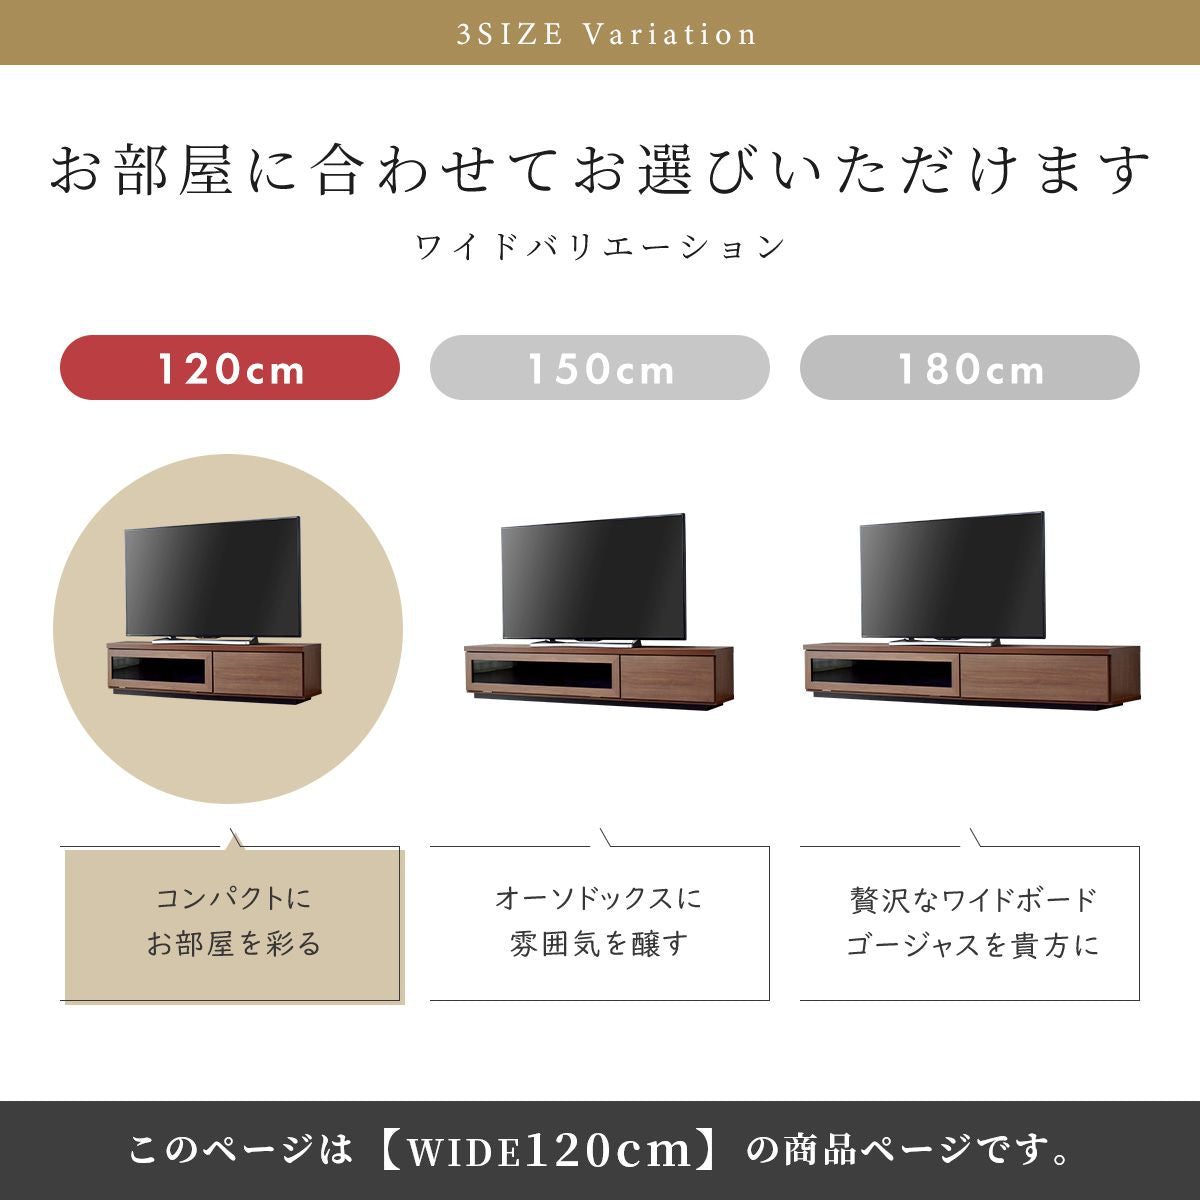 【幅120】 テレビボード ショット